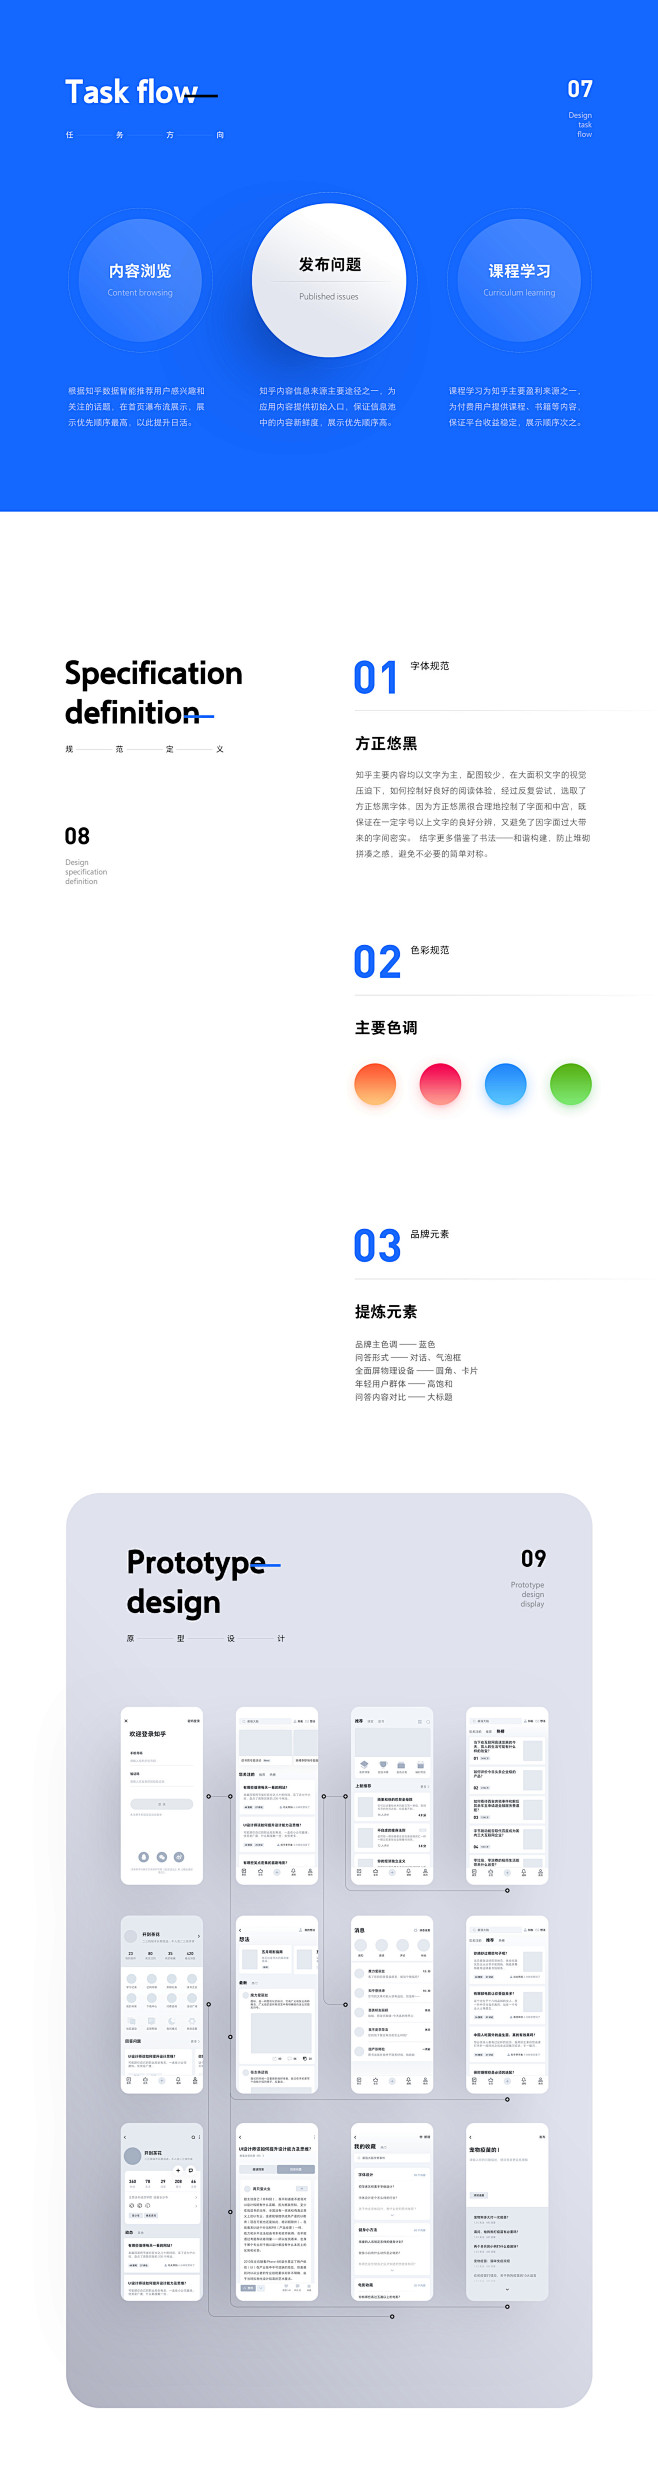 2019 年终作品总结-UI中国用户体验...